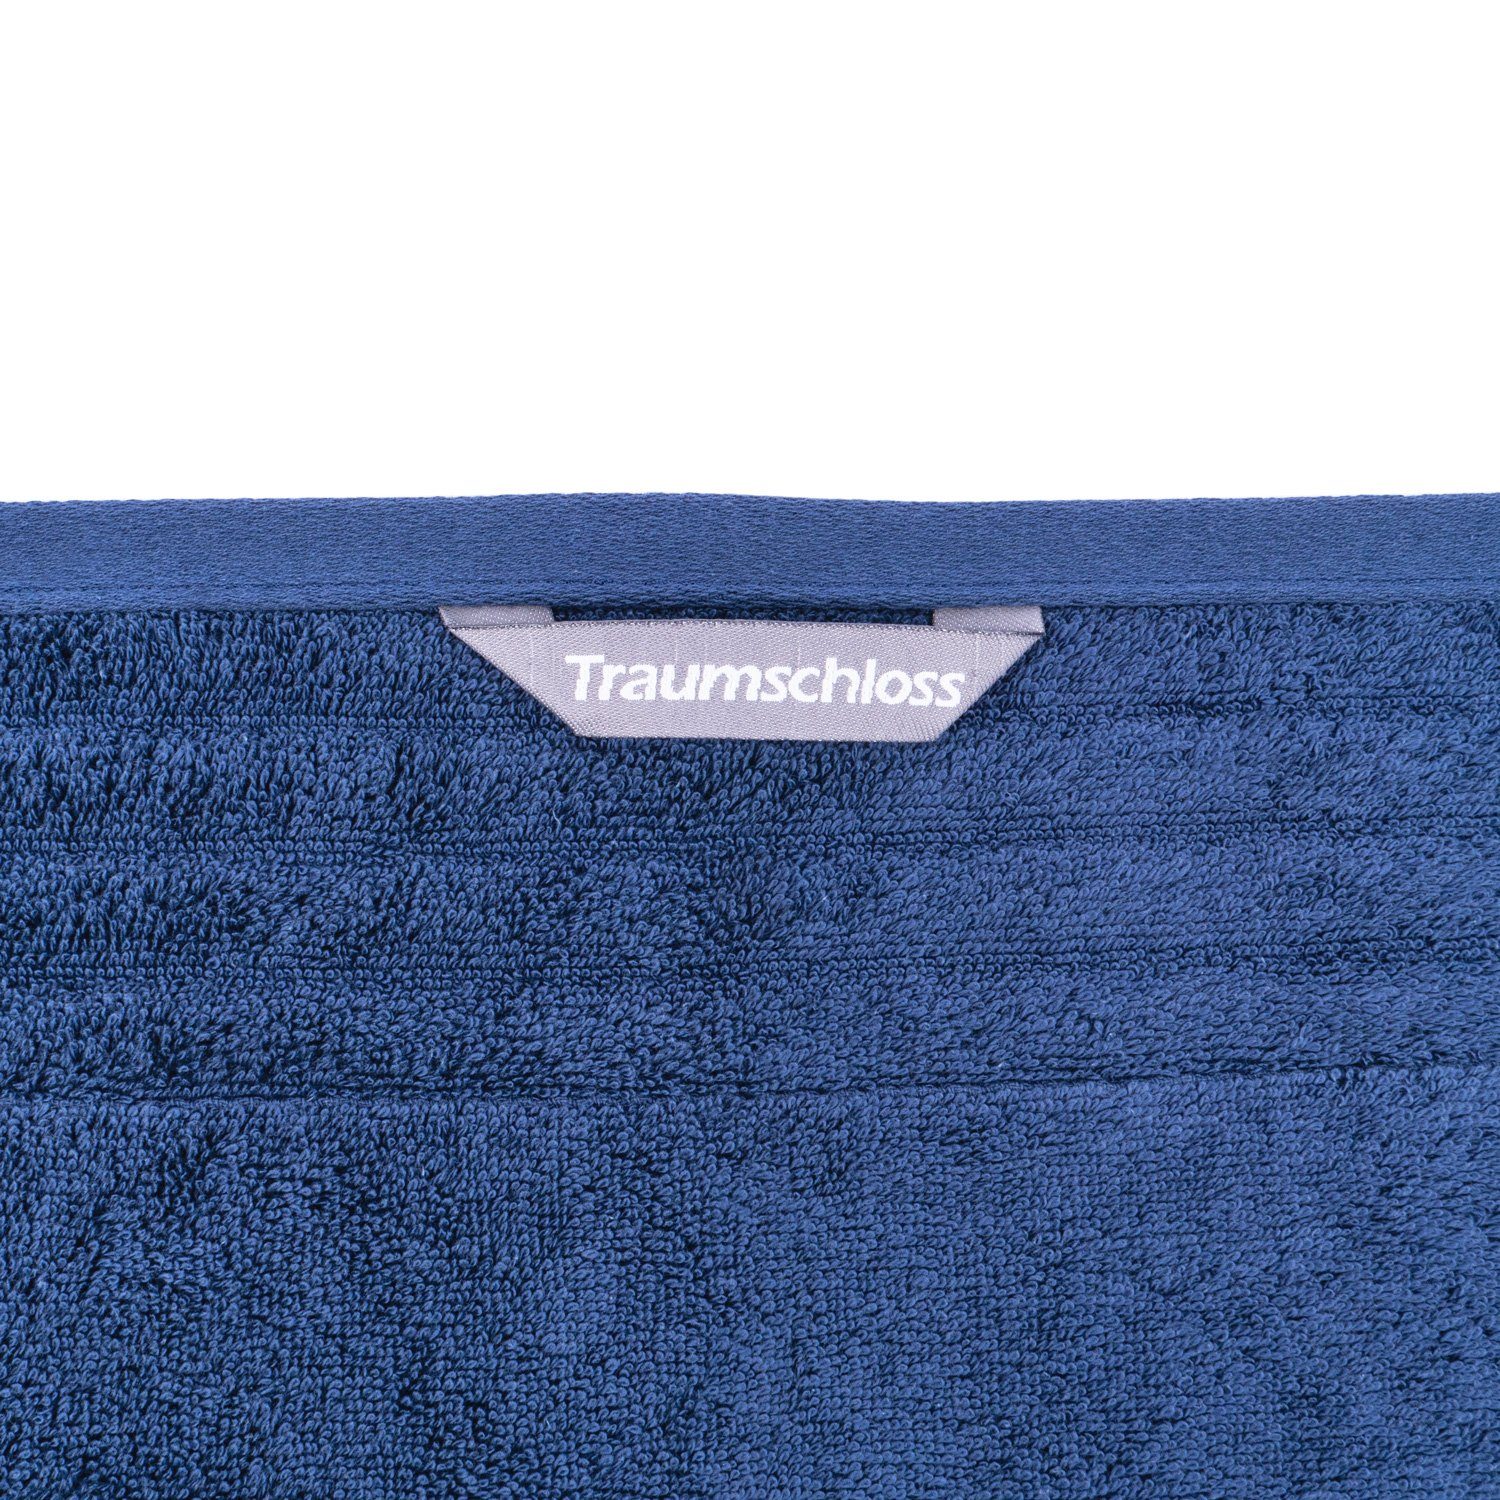 amerikanische Traumschloss Baumwolle mit 100% Frottier dunkelblau Premium-Line, Badetuch 600g/m² (1-St), Supima